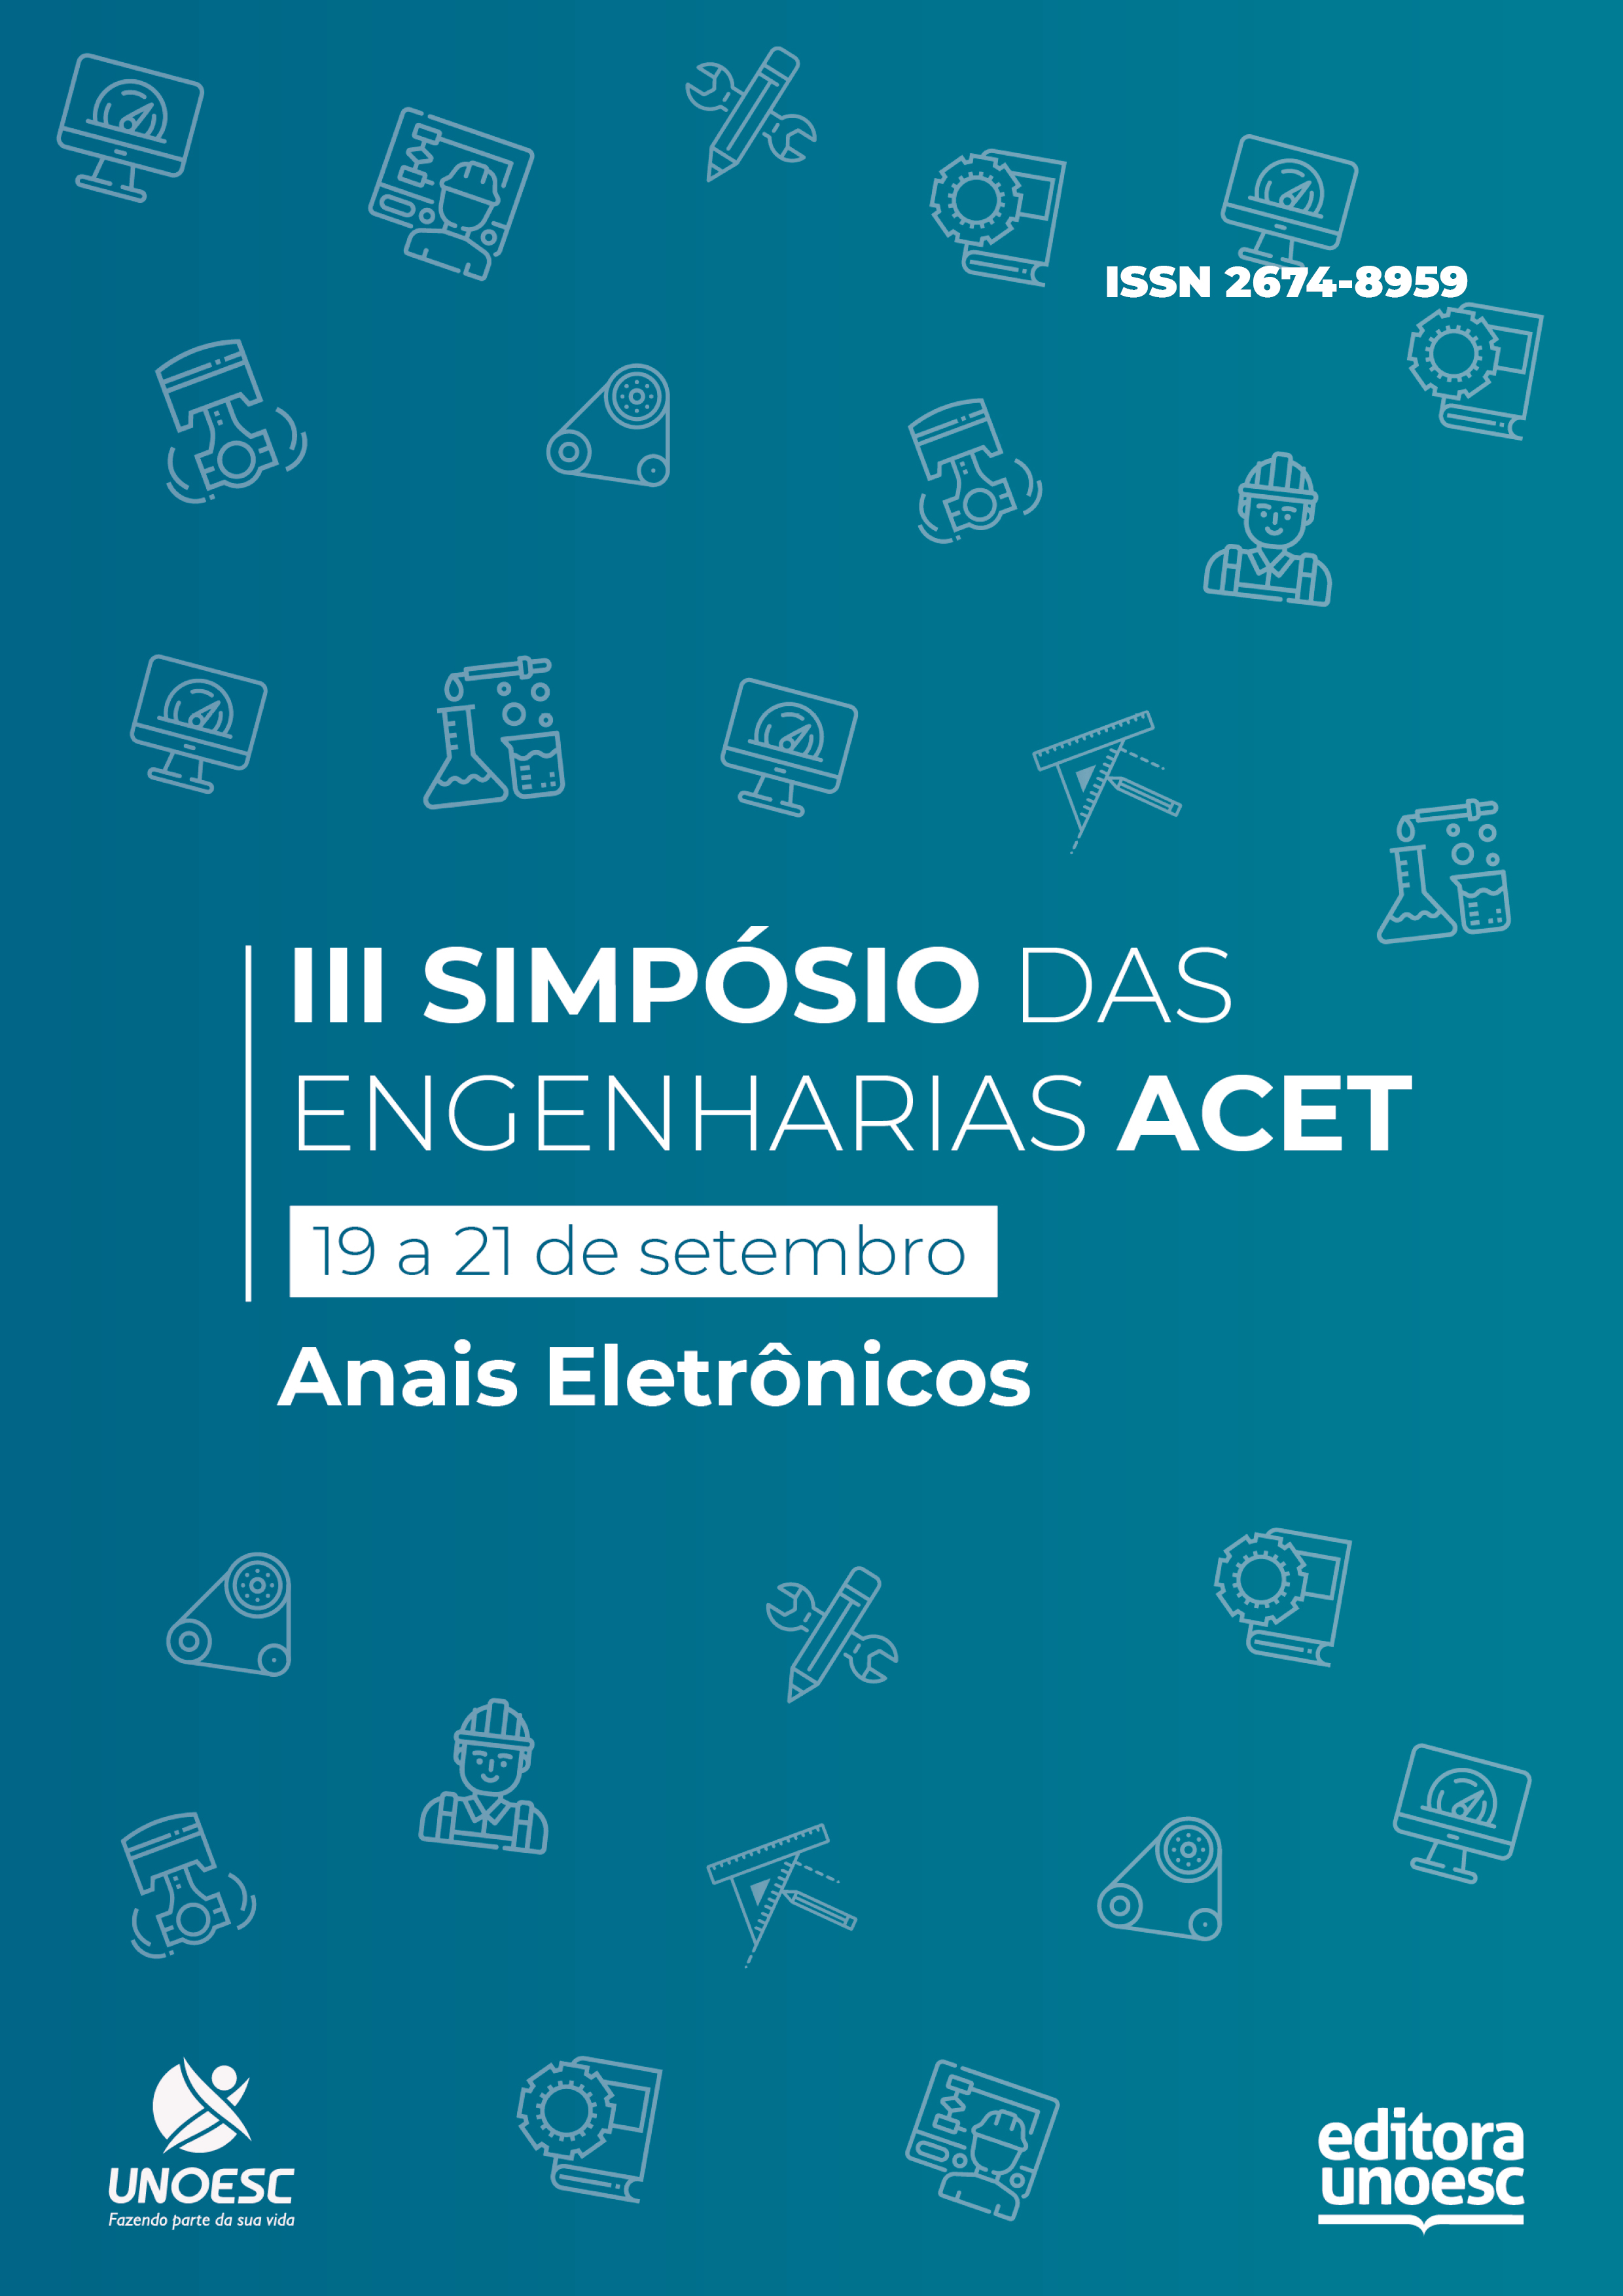 					Ver 2019: Simpósio das Engenharias ACET (Área das Ciências Exatas e Tecnológicas) – anais eletrônicos
				